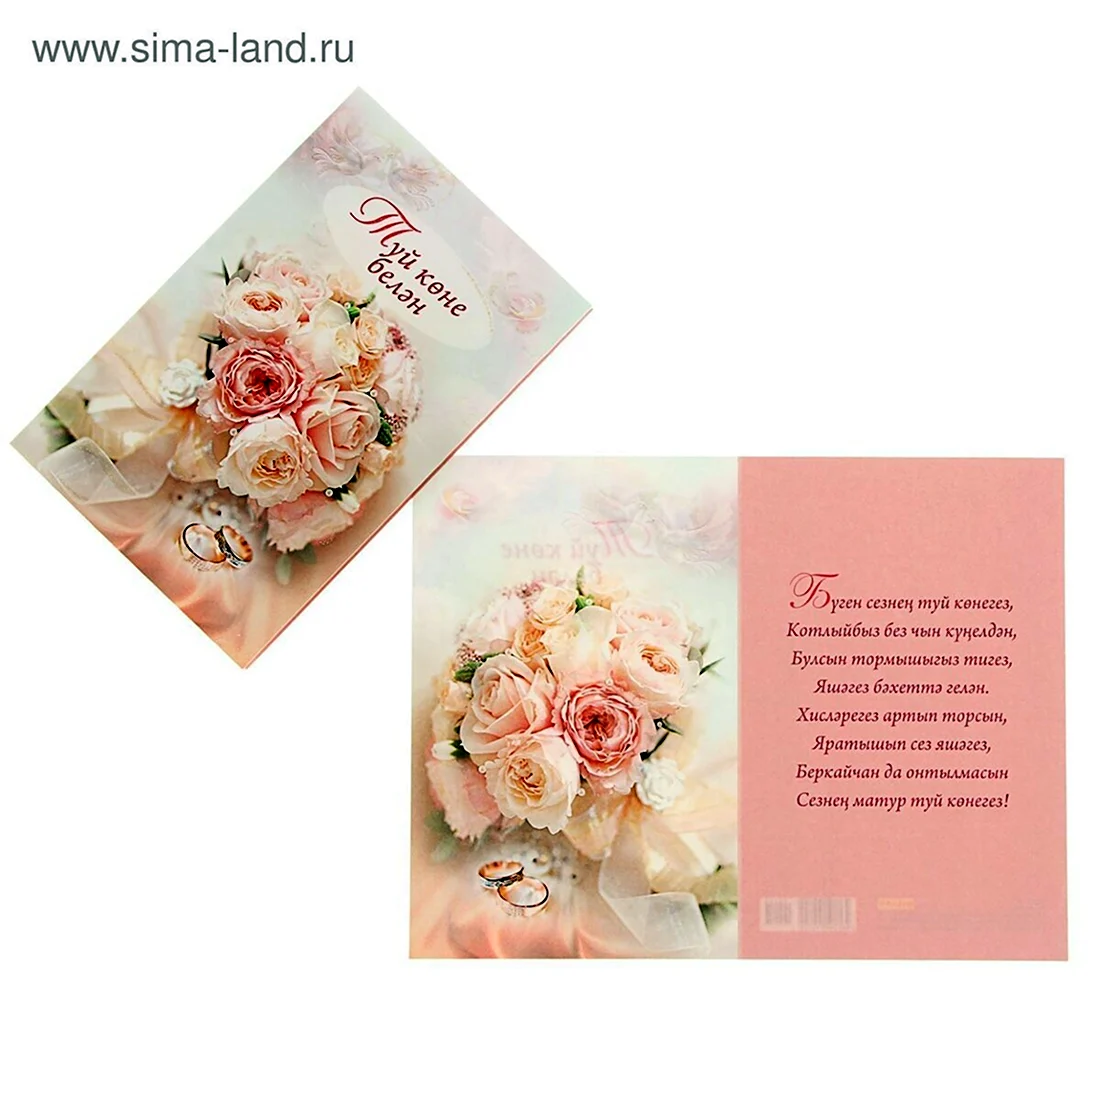 Свадебная открытка на татарском. Поздравление на праздник